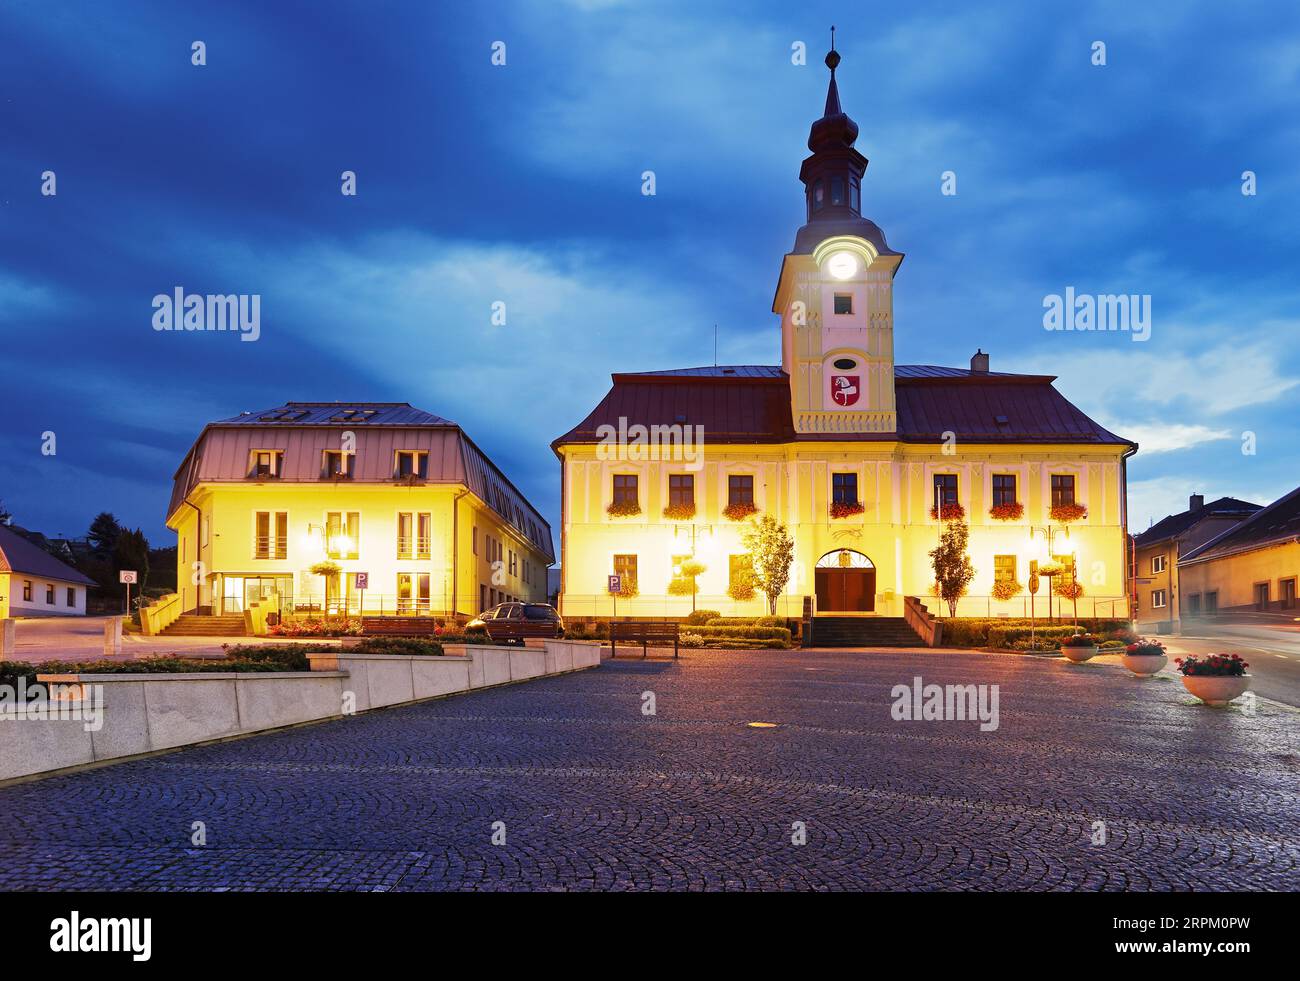 Hlinsko ville, tchèque Rapublic - Hôtel de ville baroque avec tour de l'horloge la nuit, Vysocina Banque D'Images